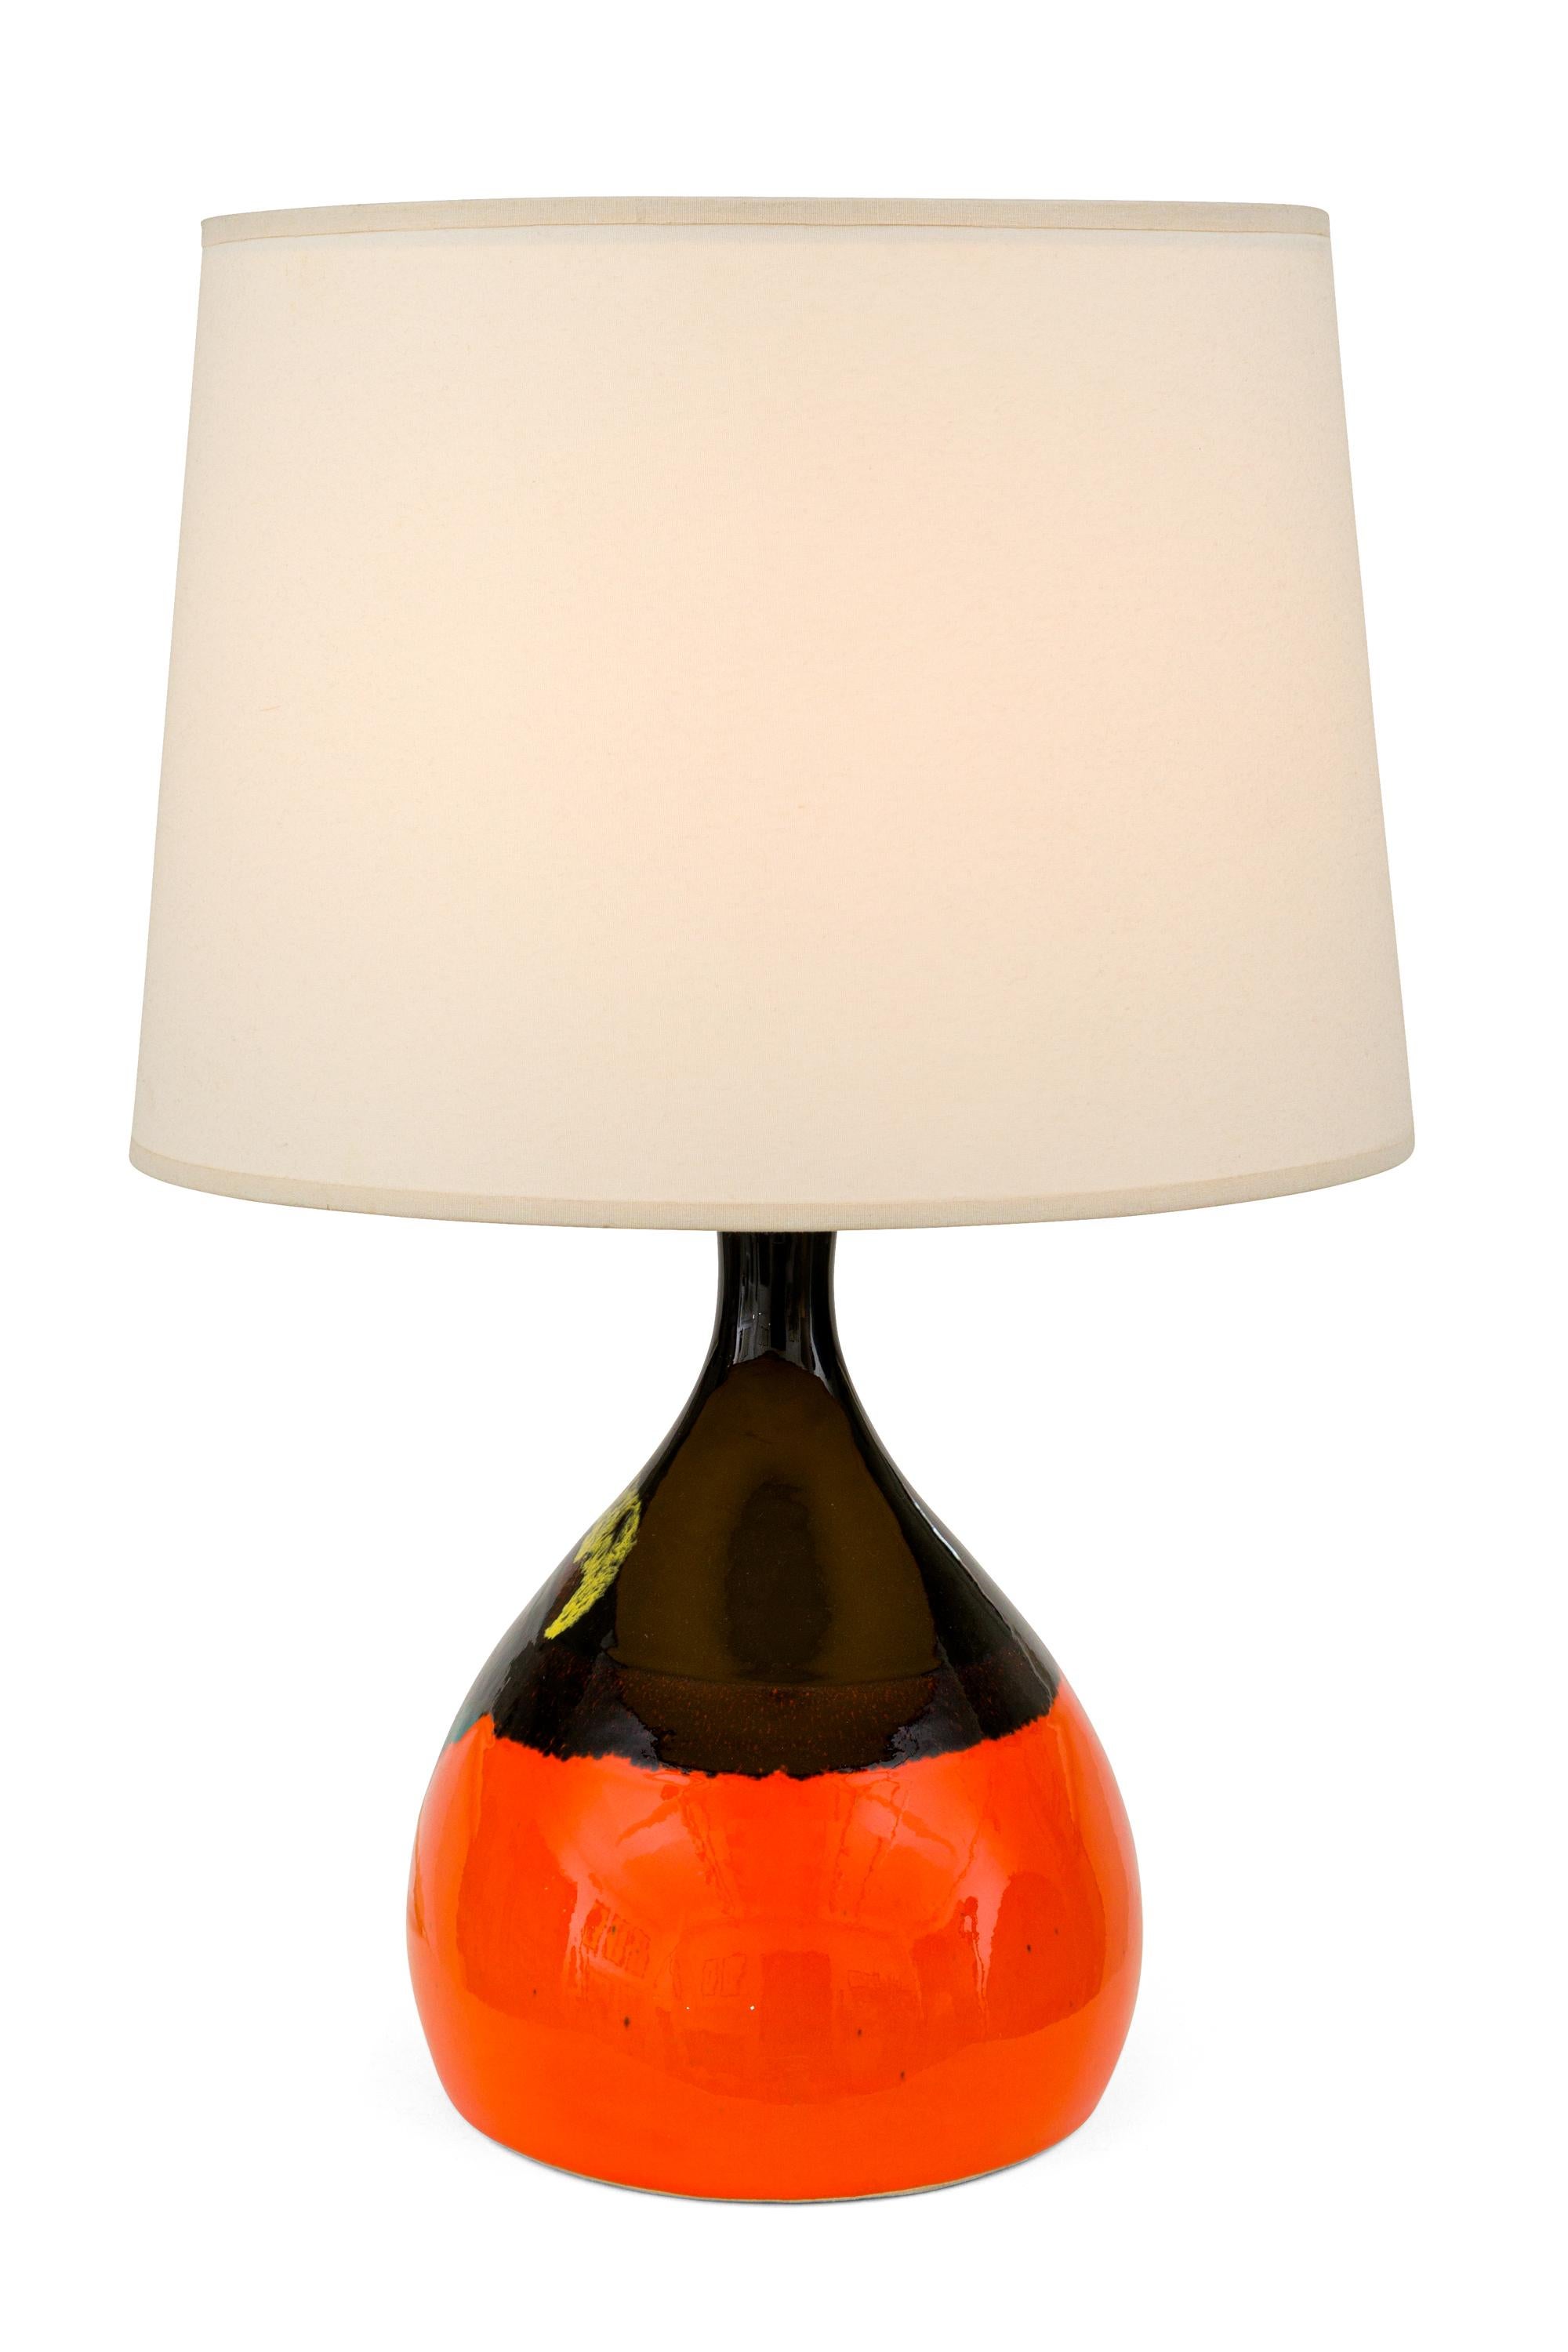 Scandinavian Modern Bjorn Wiinblad Signed Orange Ceramic Table Lamps for Rosenthal, Denmark 1960s